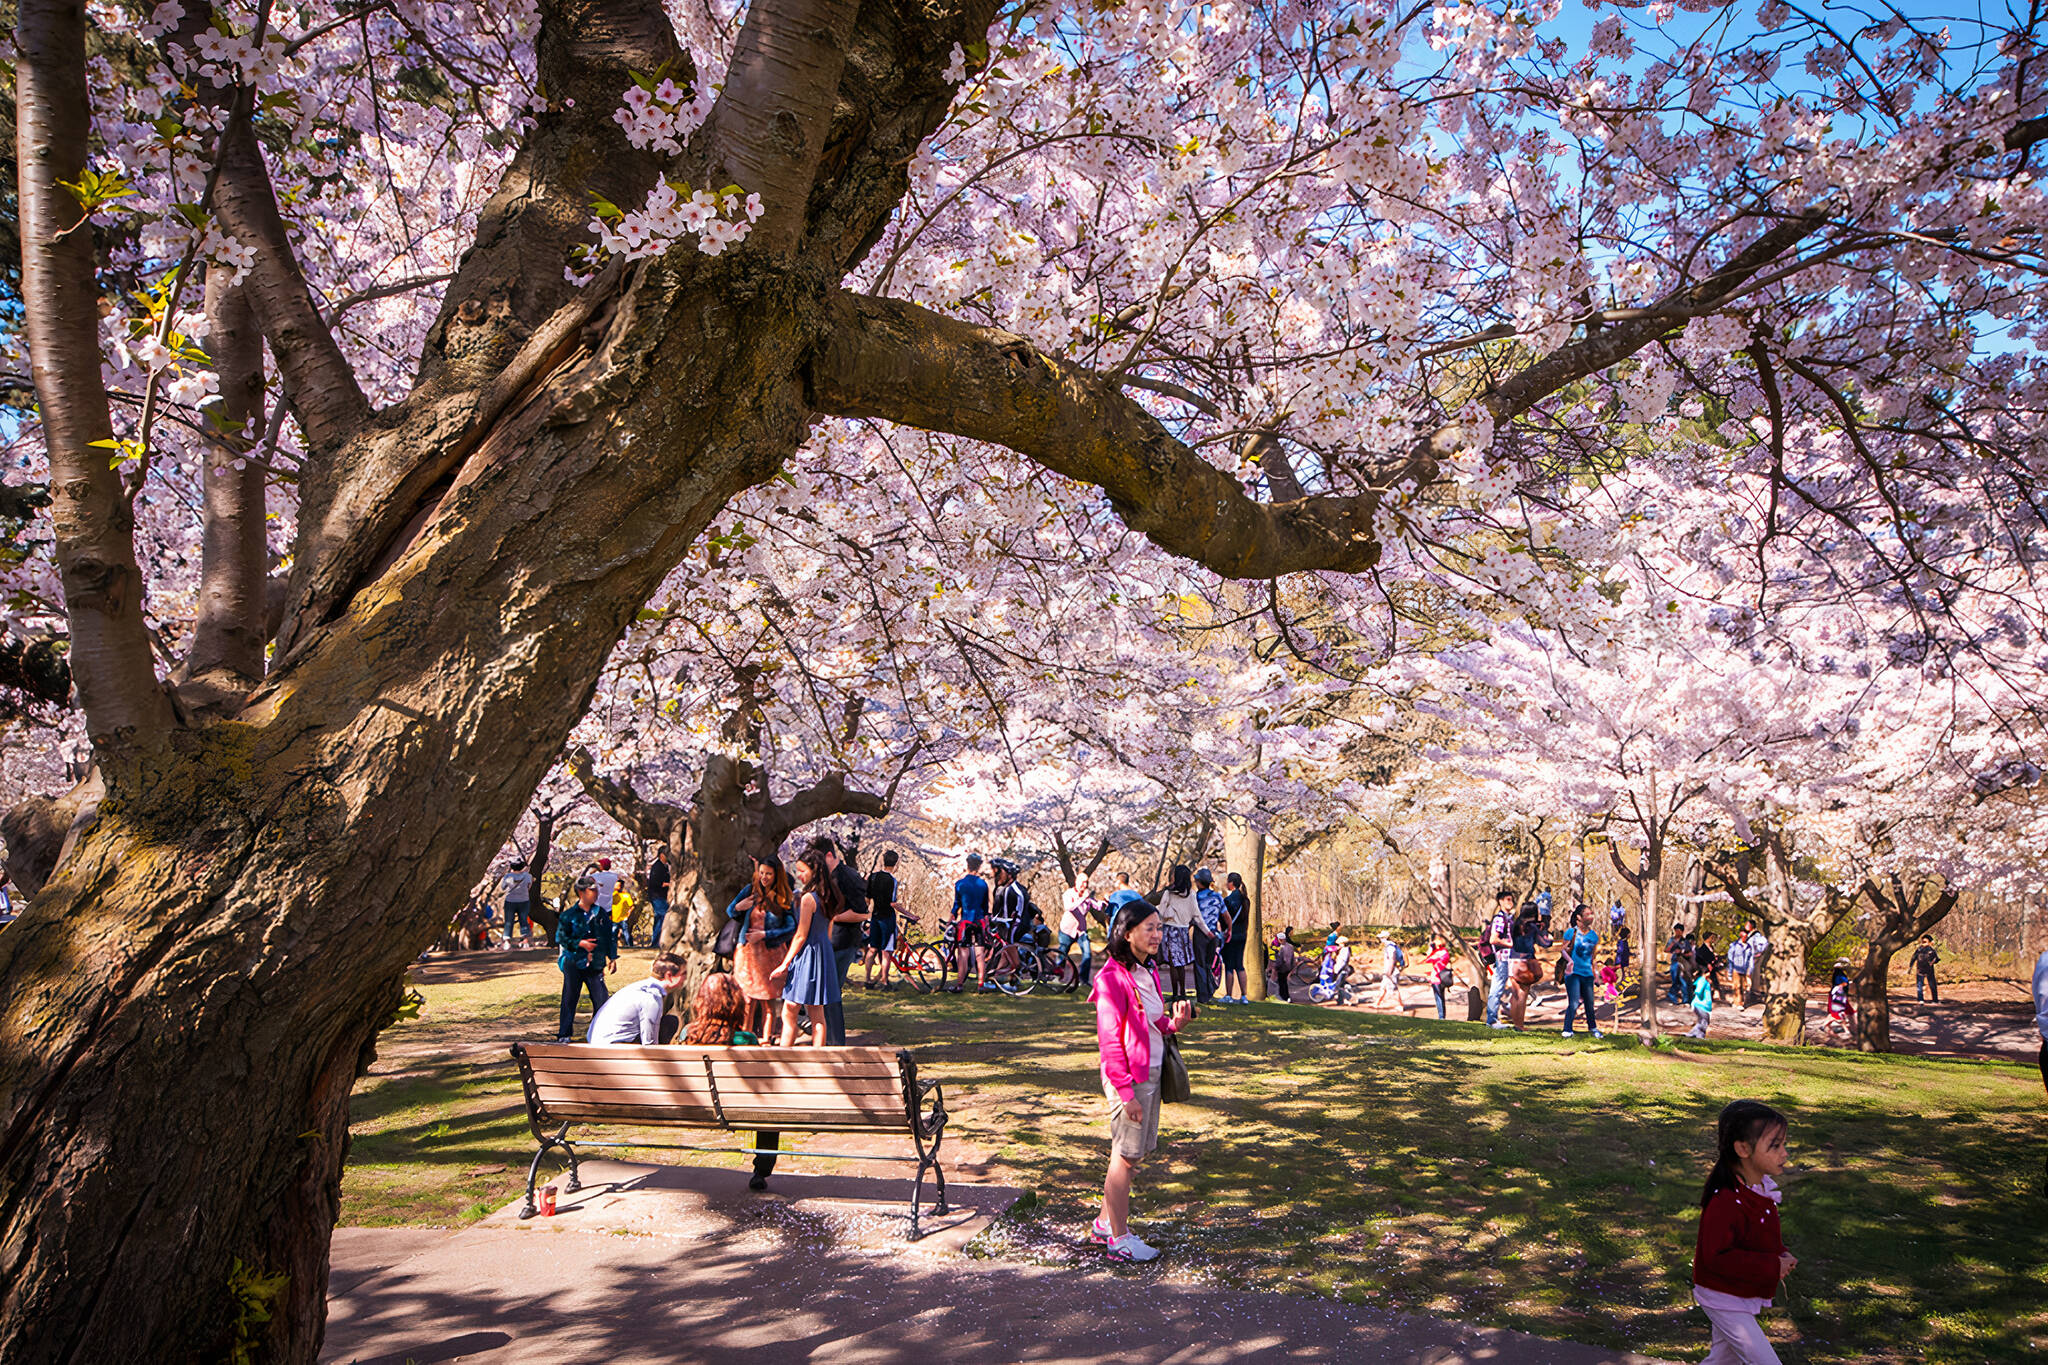 Du Lịch Toronto Mùa Xuân: Hoa Anh Đào Và Cảnh Quan Rực Rỡ 20220329-cherry-blossom-toronto3